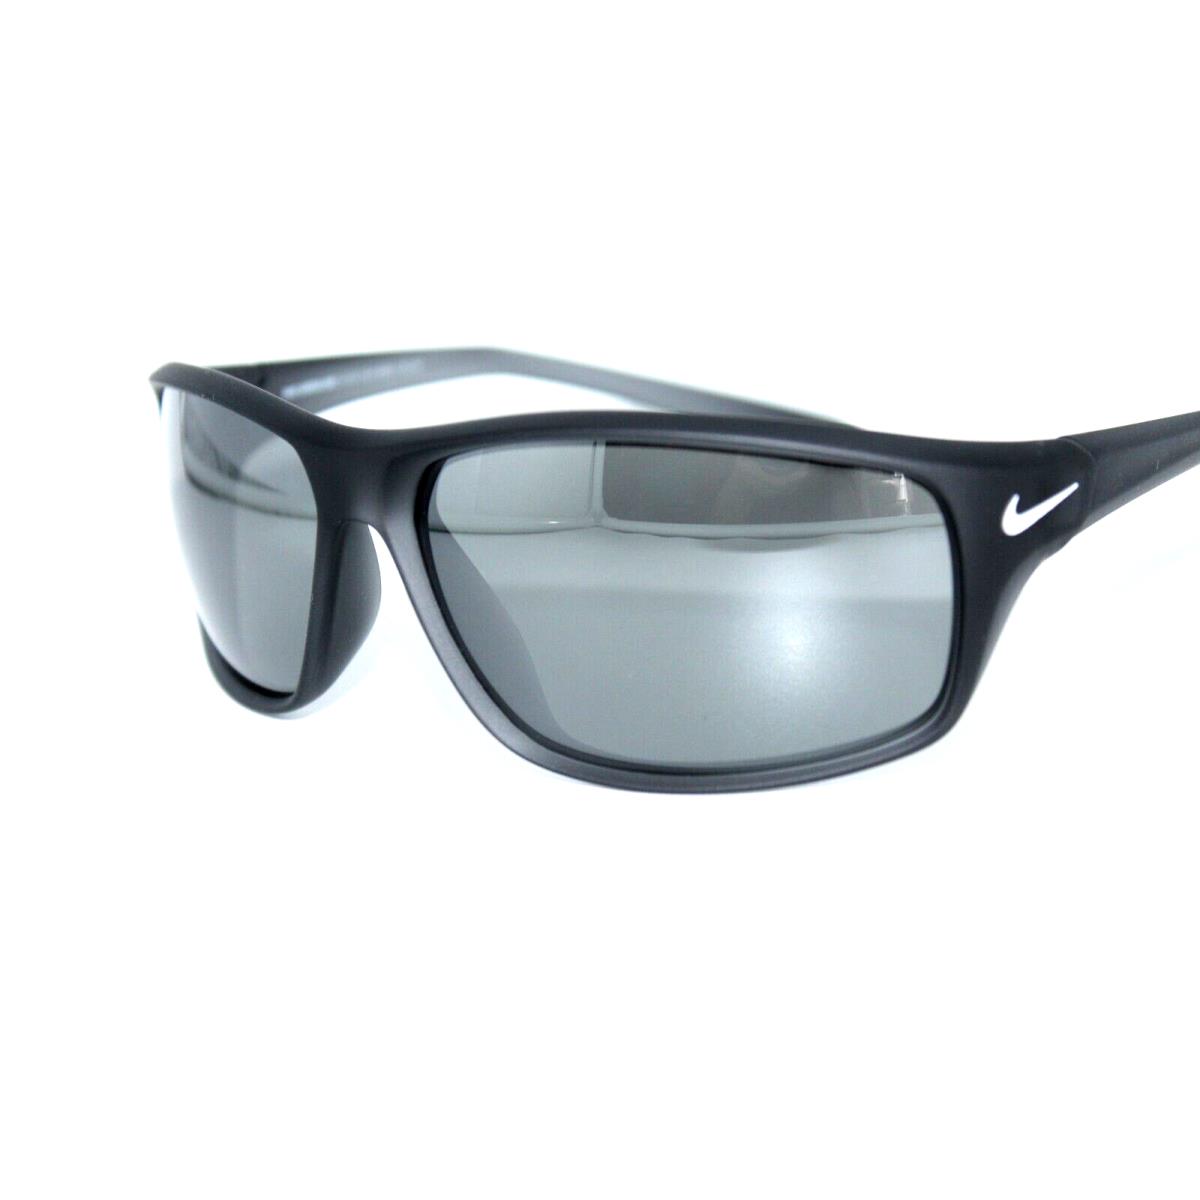 Nike sunglasses ADRENALINE - Gray Frame, Gray Lens 0